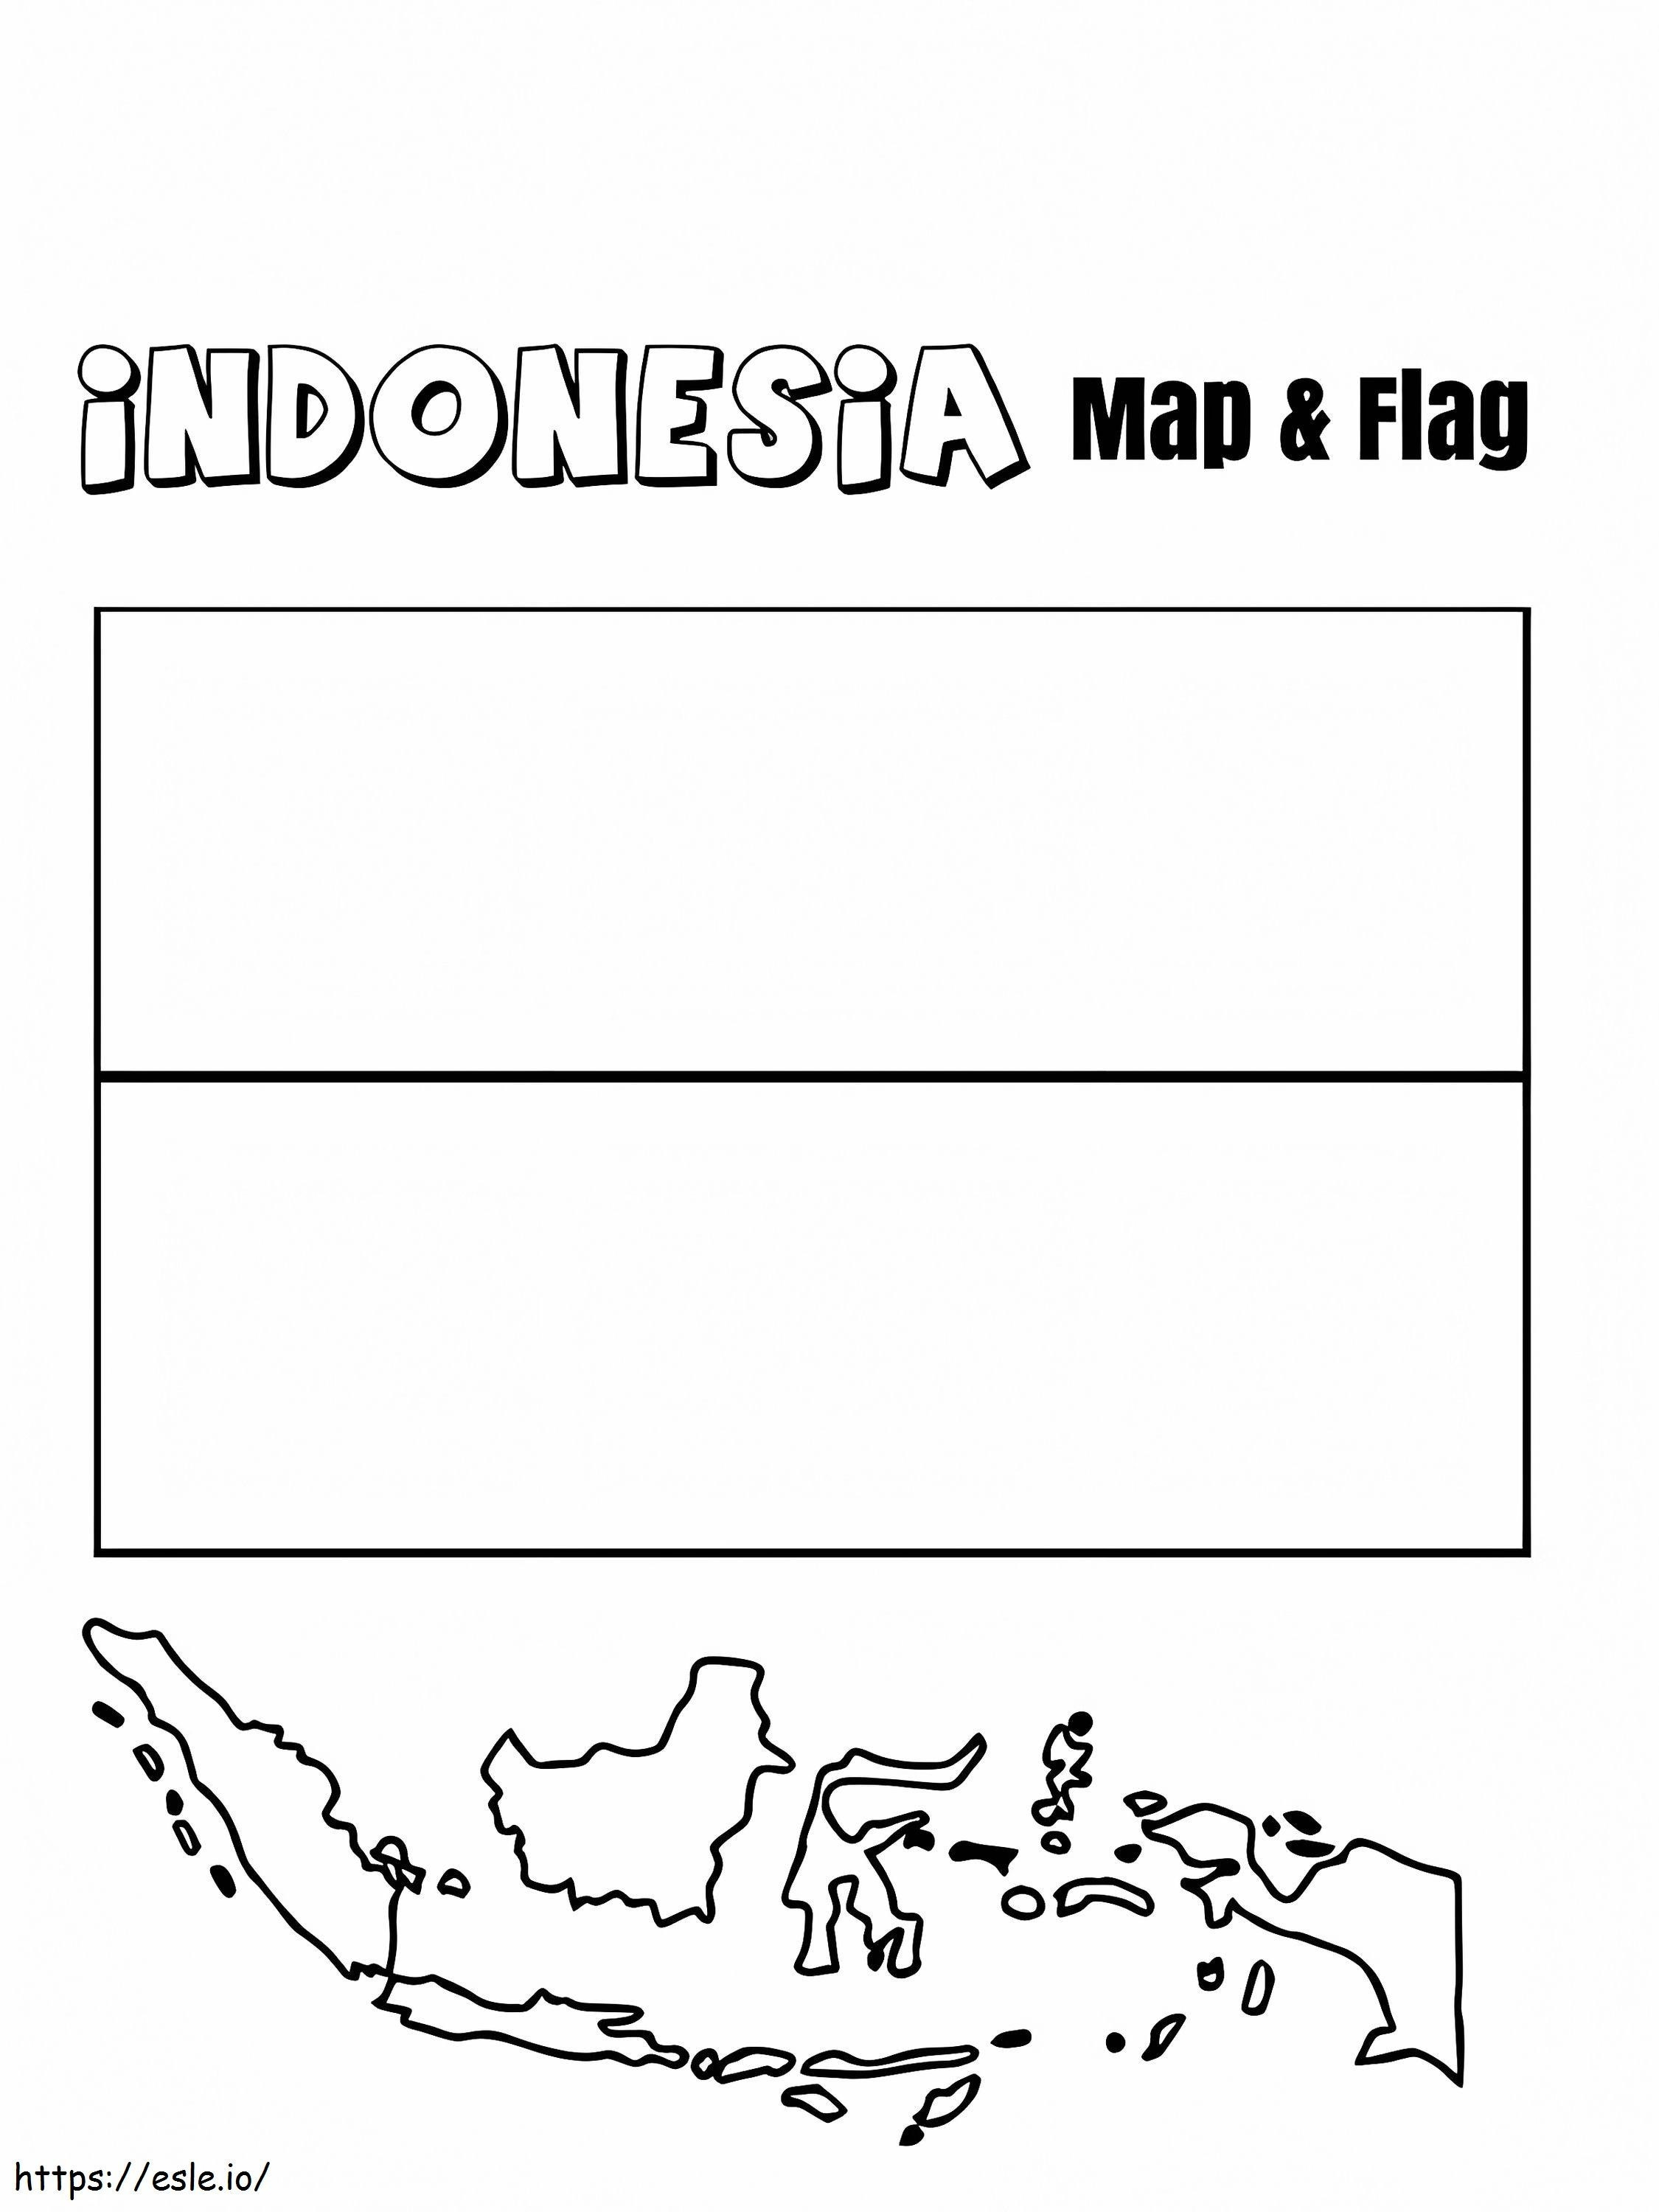 Indonesië Vlag En Kaart kleurplaat kleurplaat